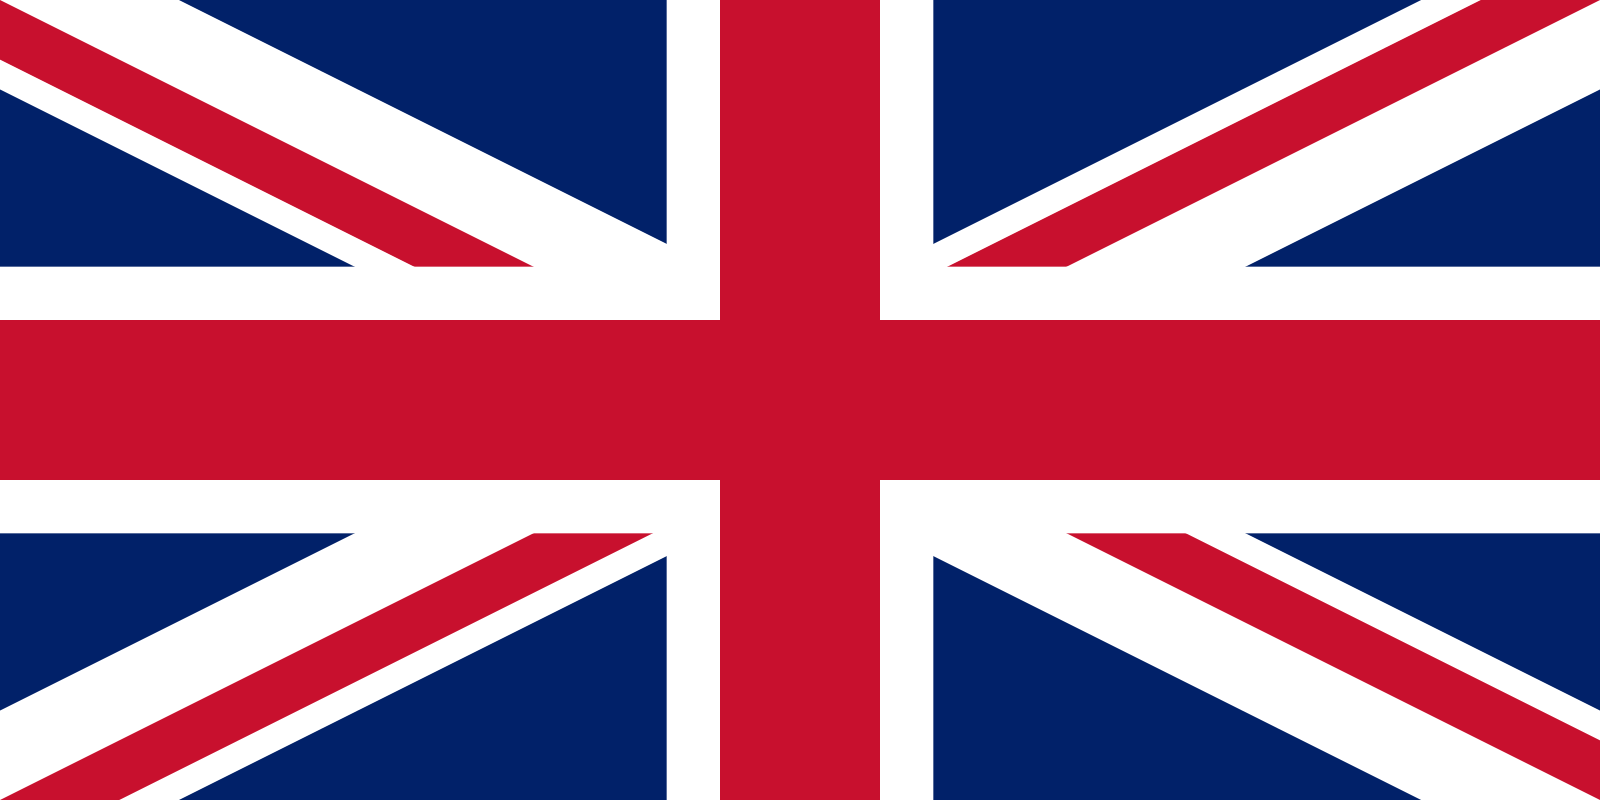 Флаг соединённого королевства Великобритании и Северной Ирландии